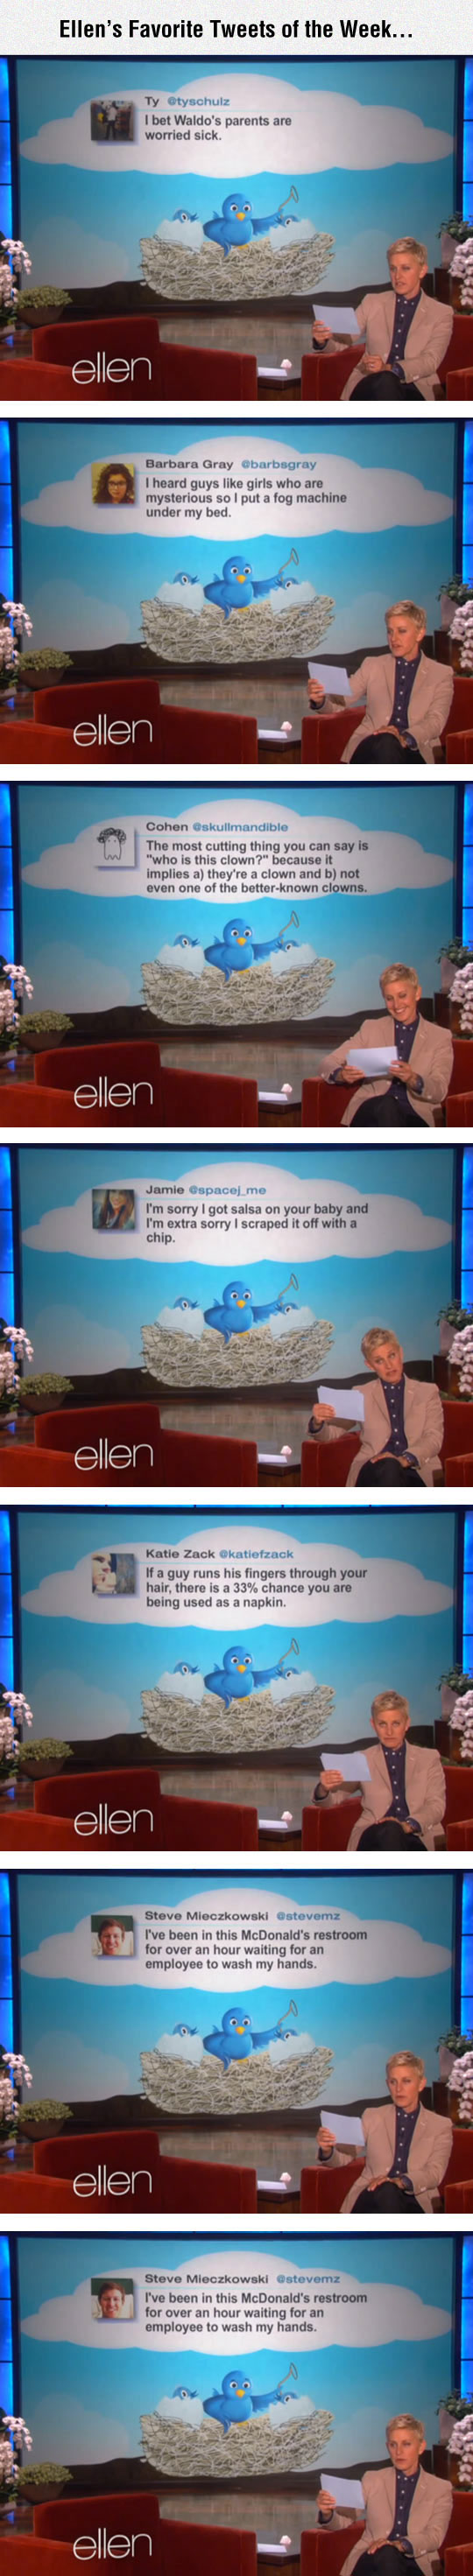 funny-Tweets-Ellen-DeGeneres-read